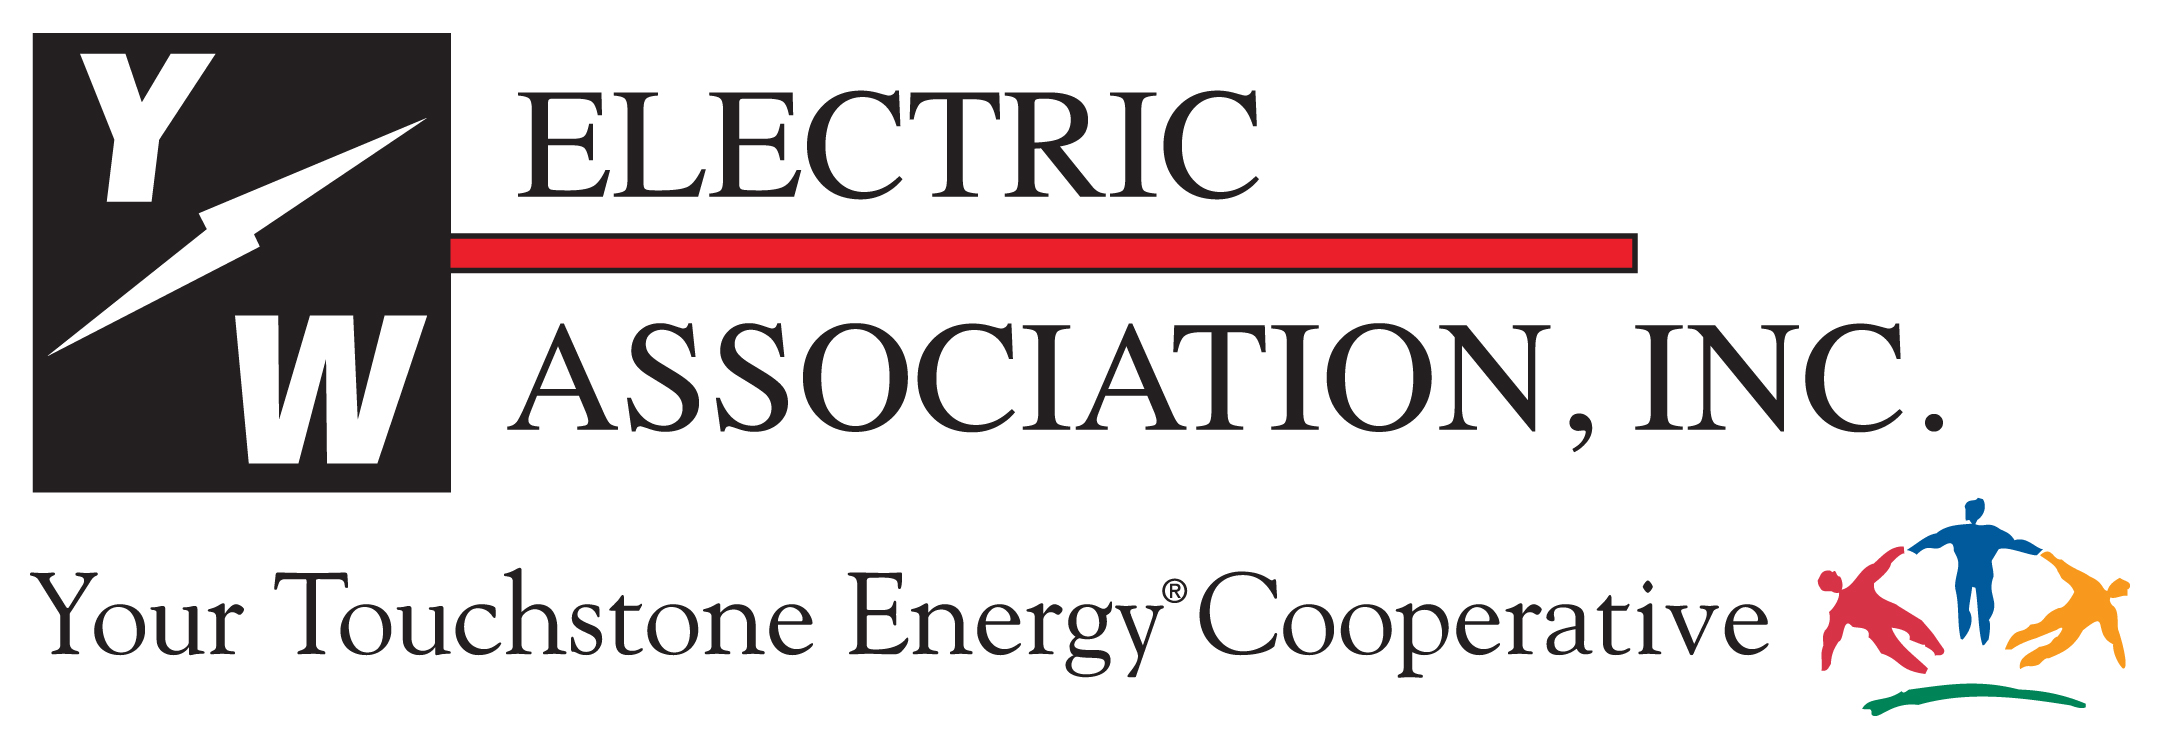 Home Y W Electric Association Inc